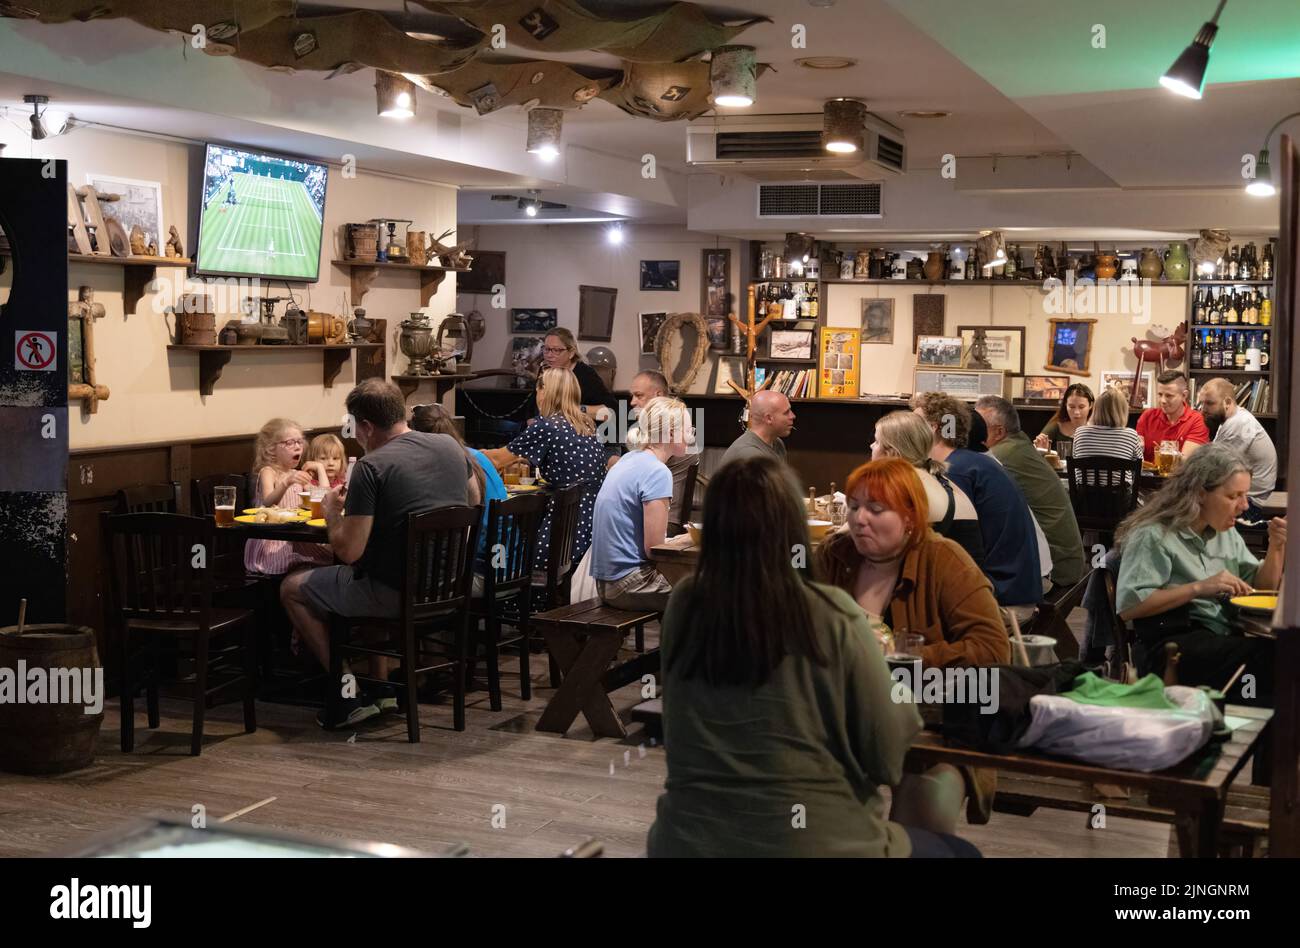 Litauische Lebensart: Abends sitzen und essen Menschen in einer Bar-Inneneinrichtung, in Vilnius, Litauen, den baltischen Staaten, Europa Stockfoto